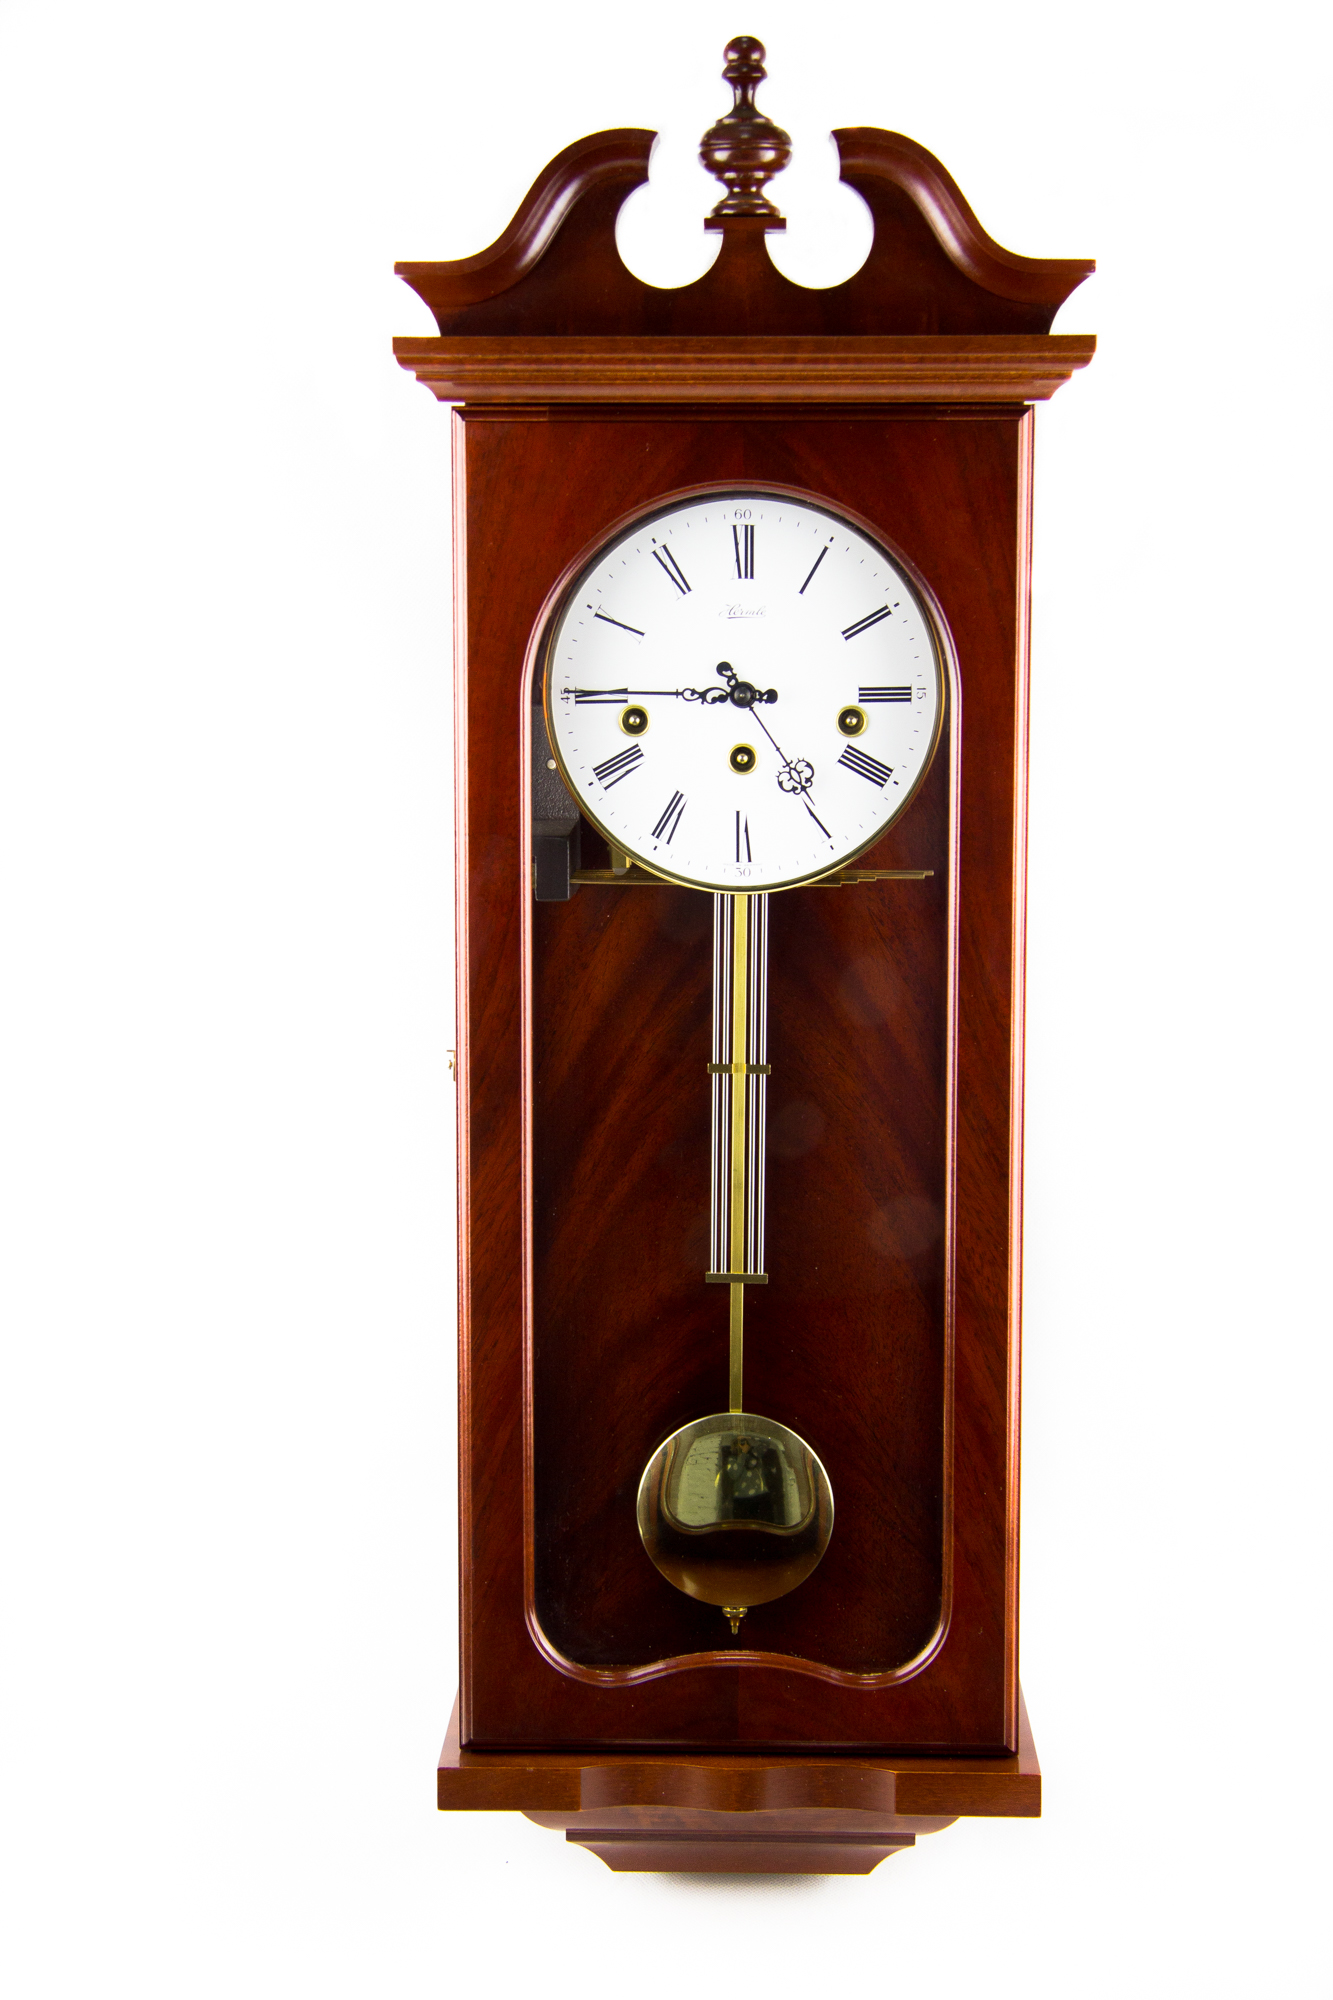 Настенные часы hermle. Часы Хермле настенные. Часы Hermle настенные с маятником. Часы Хермле настольные. Часы настенные Franz Hermle.